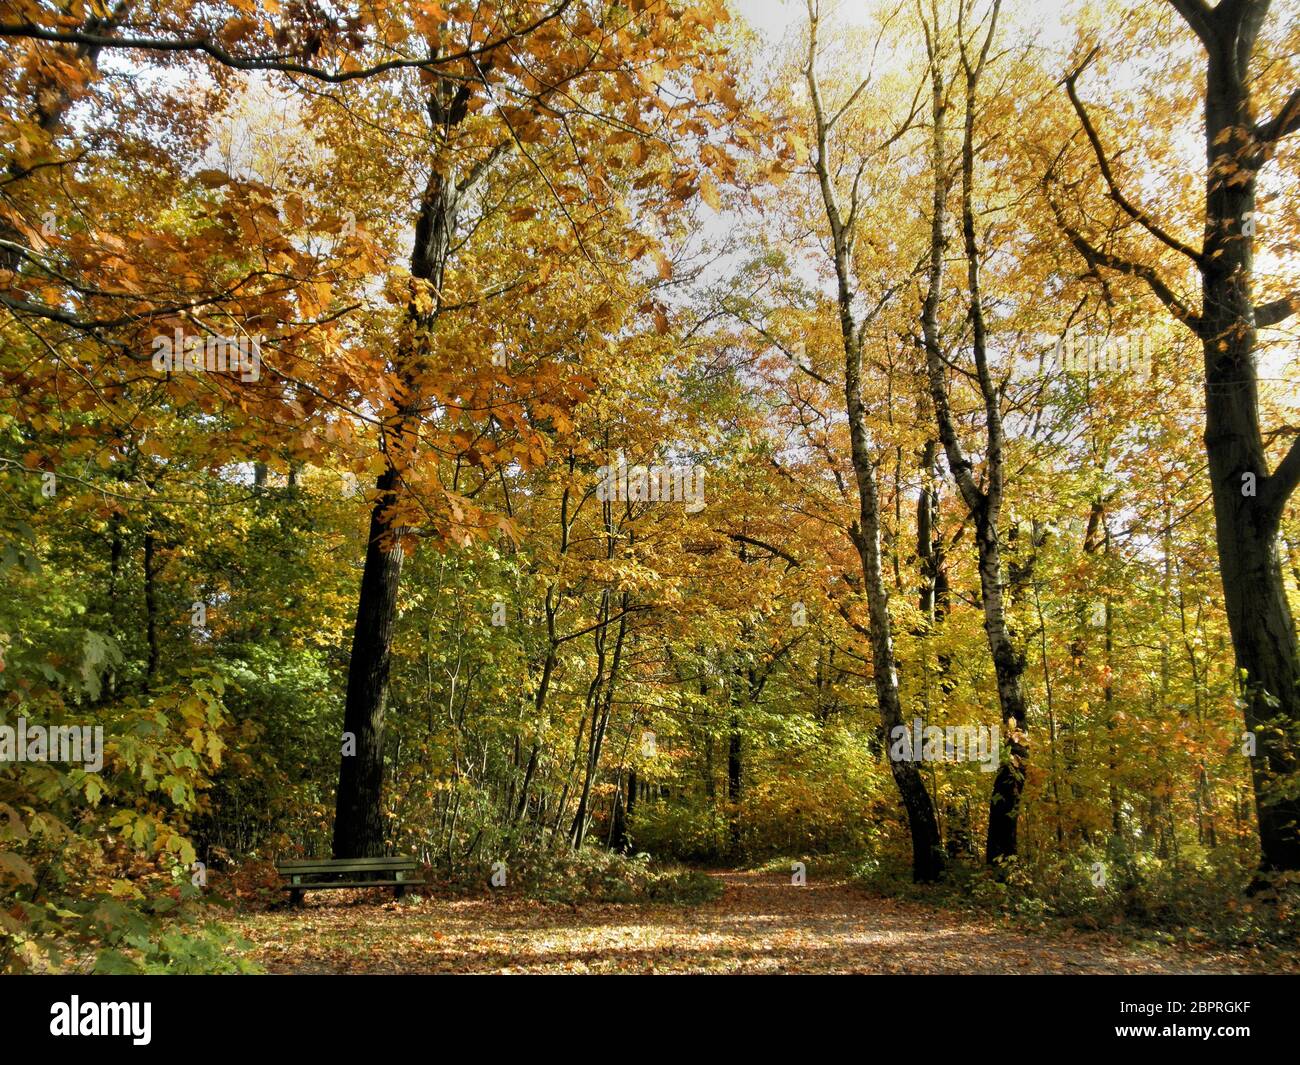 Rastplatz en einem Buchenwald im Herbst, sonniger Tag, buna Laubbäume lugar de descanso en un bosque de haya en otoño, día soleado, árboles caducos de colores Foto de stock